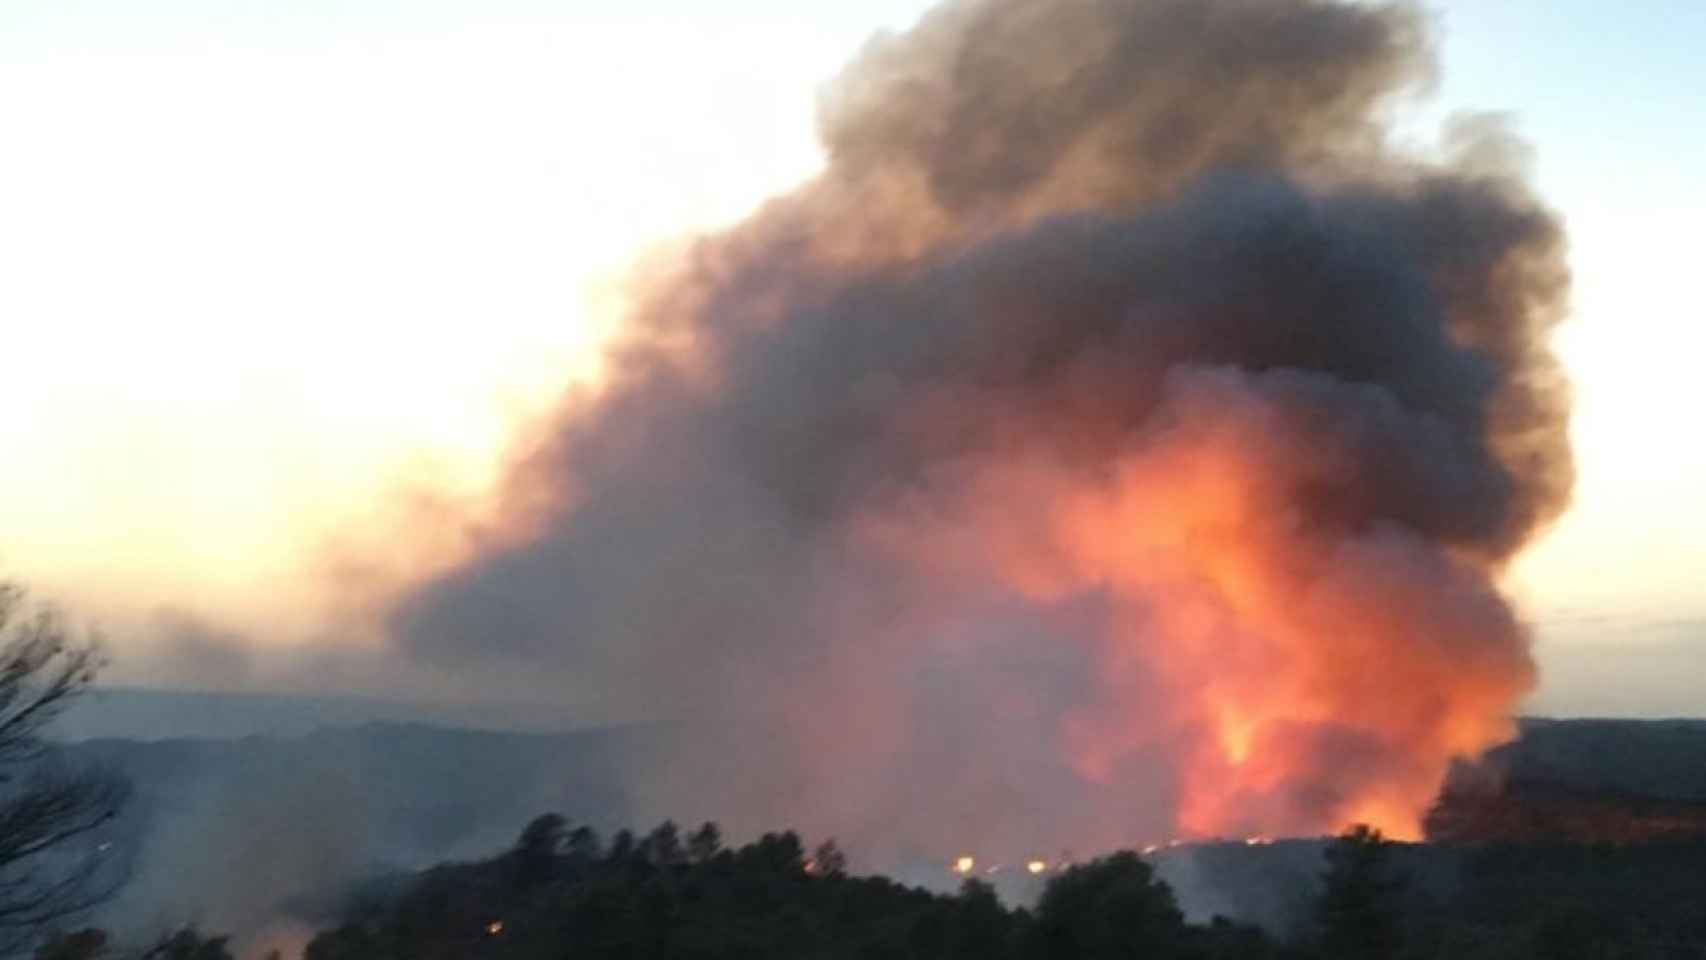 Imágenes del terrible incendio que afecta a la comarca de la Ribera d'Ebre, al sur de Tarragona / BOMBERS